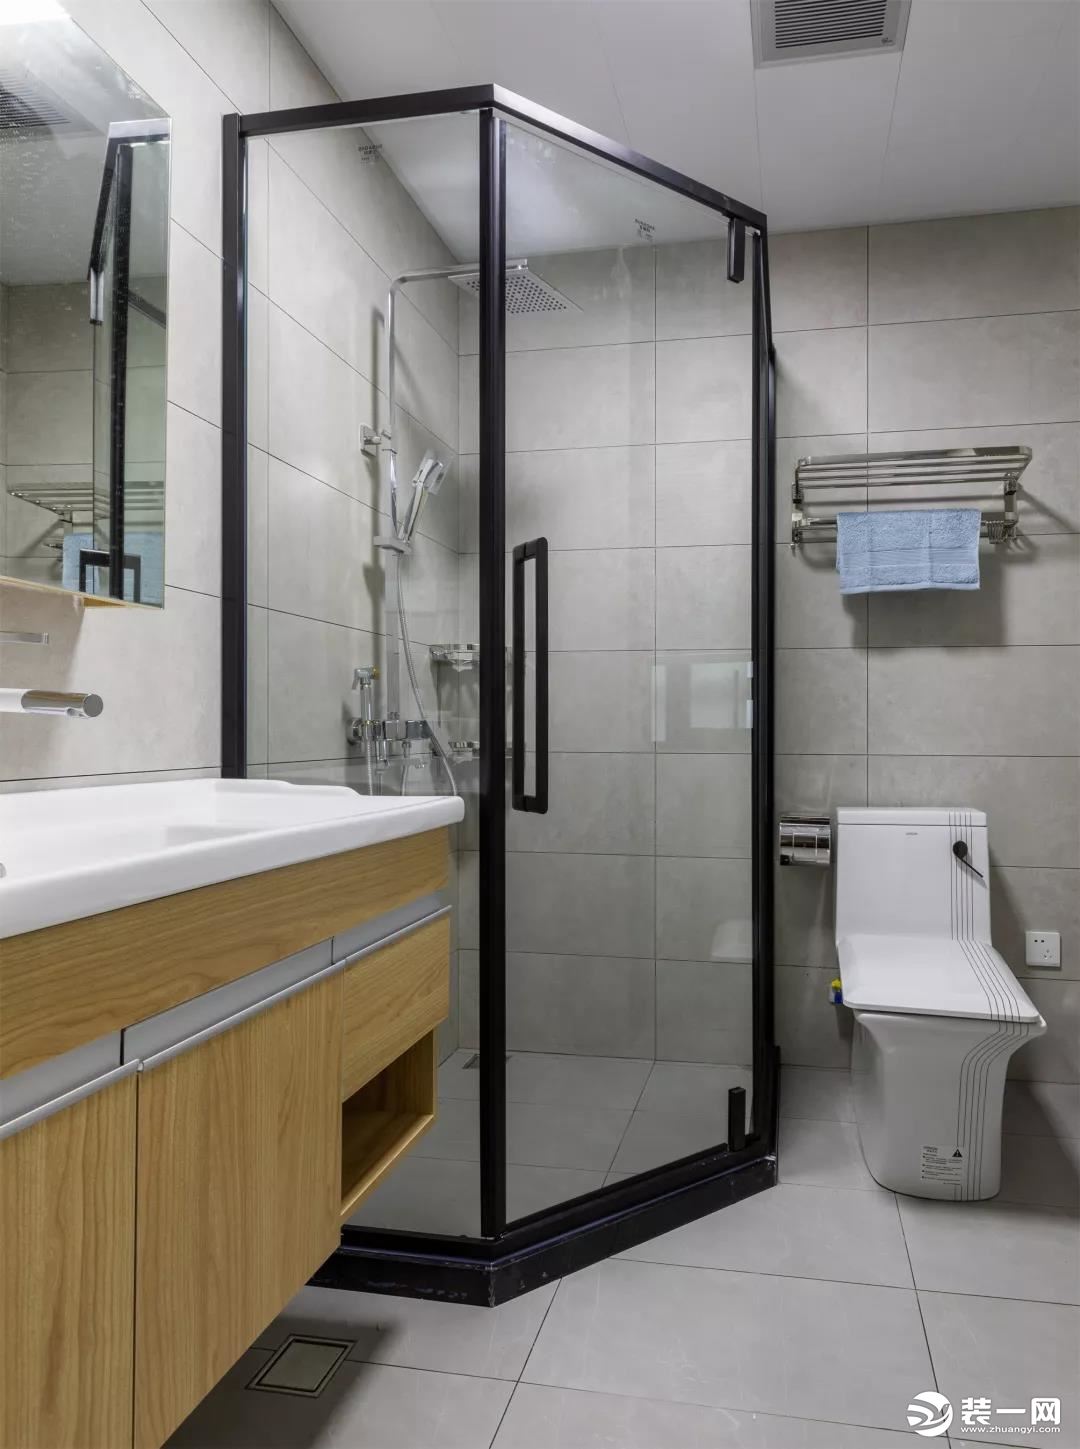 2013现代风格样板间房屋卫生间淋浴房洗手台镜子装修效果图 – 设计本装修效果图